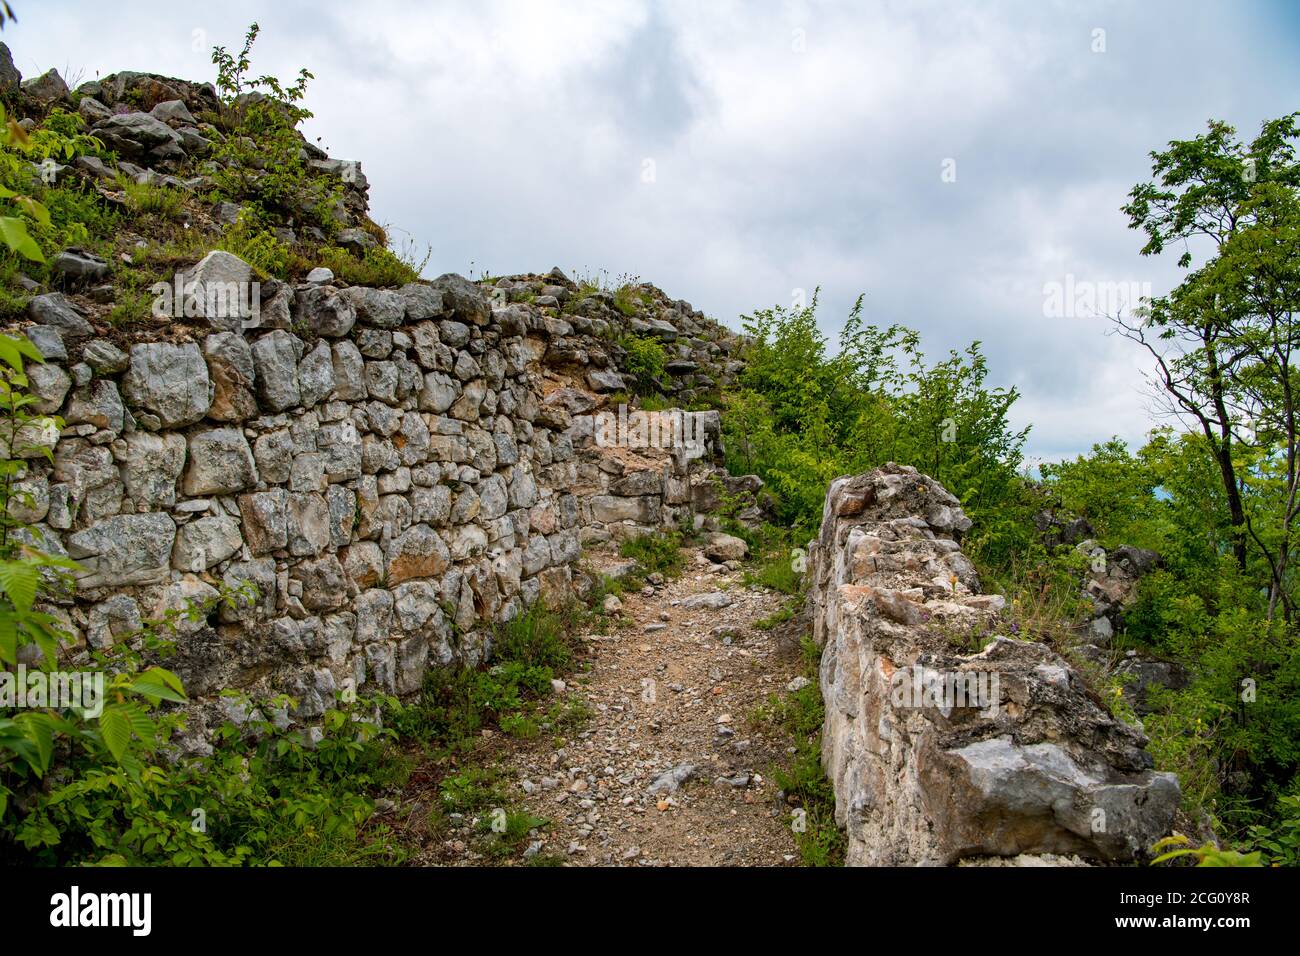 le fort de Solotnik a été construit au Moyen-âge du XIIIe siècle Tara montagne pour sécuriser une route sûre d'Uzice à Visegrad Banque D'Images